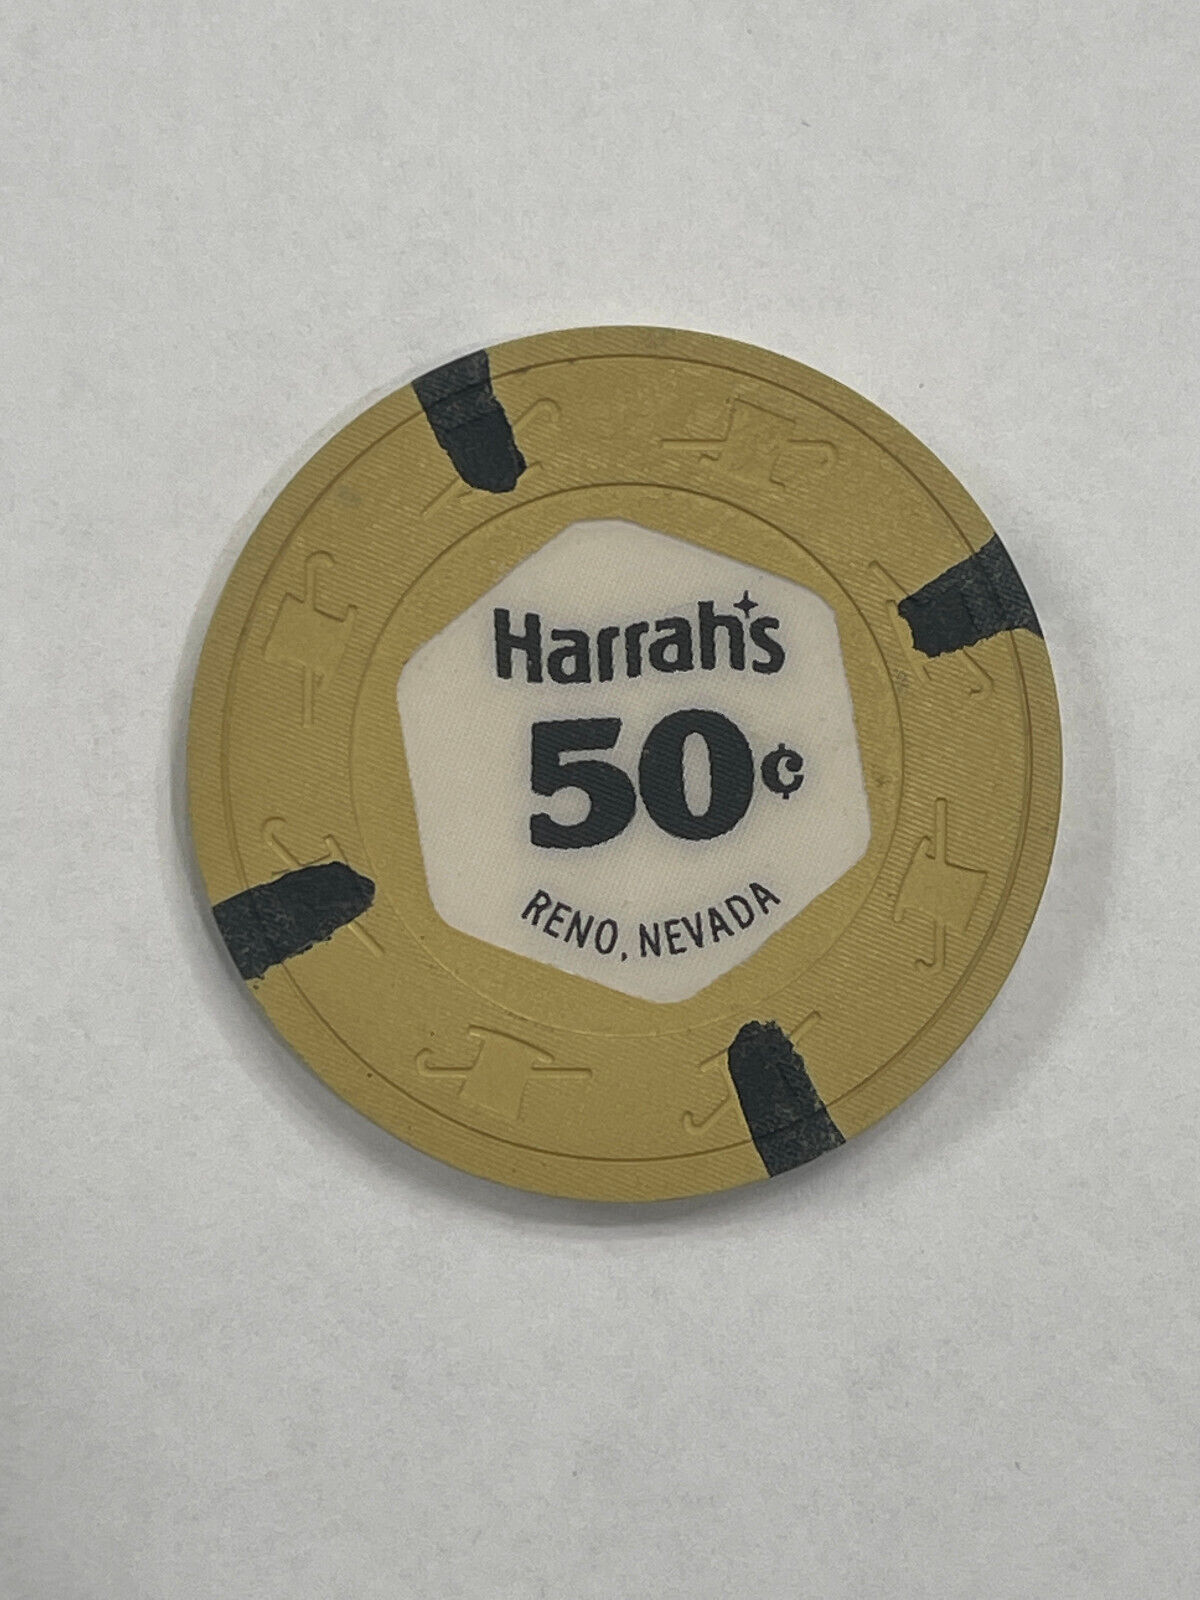 50 CENT HARRAH'S CASINO CHIP RENO NEVADA 1970'S VALUE CODE J $50-$59